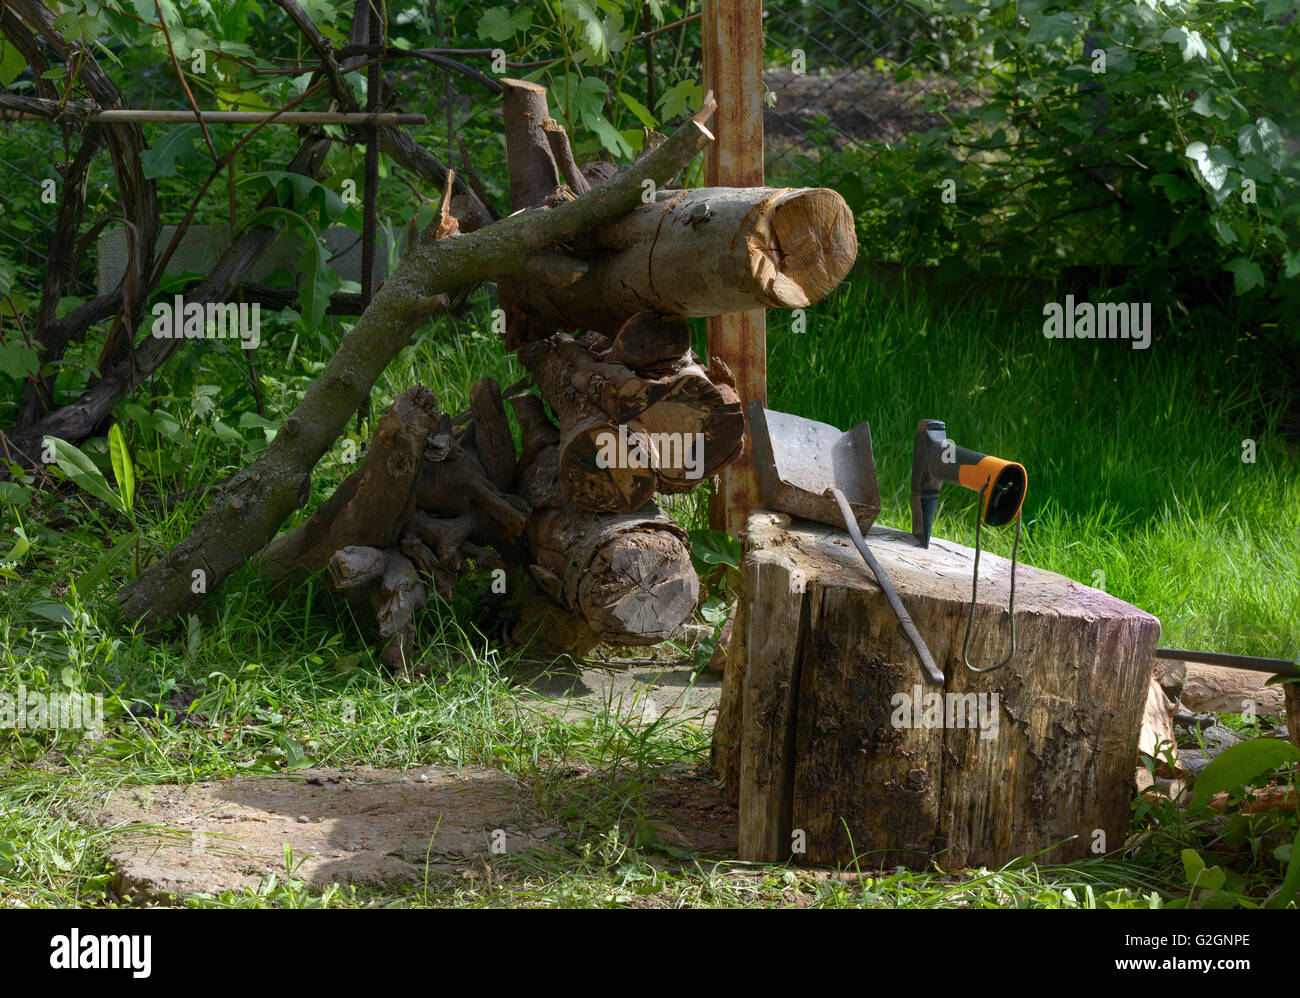 Holzblock mit Axt und Teile des Baumes für Brennholz sind auf Grund der grünen Pflanzen. Stockfoto